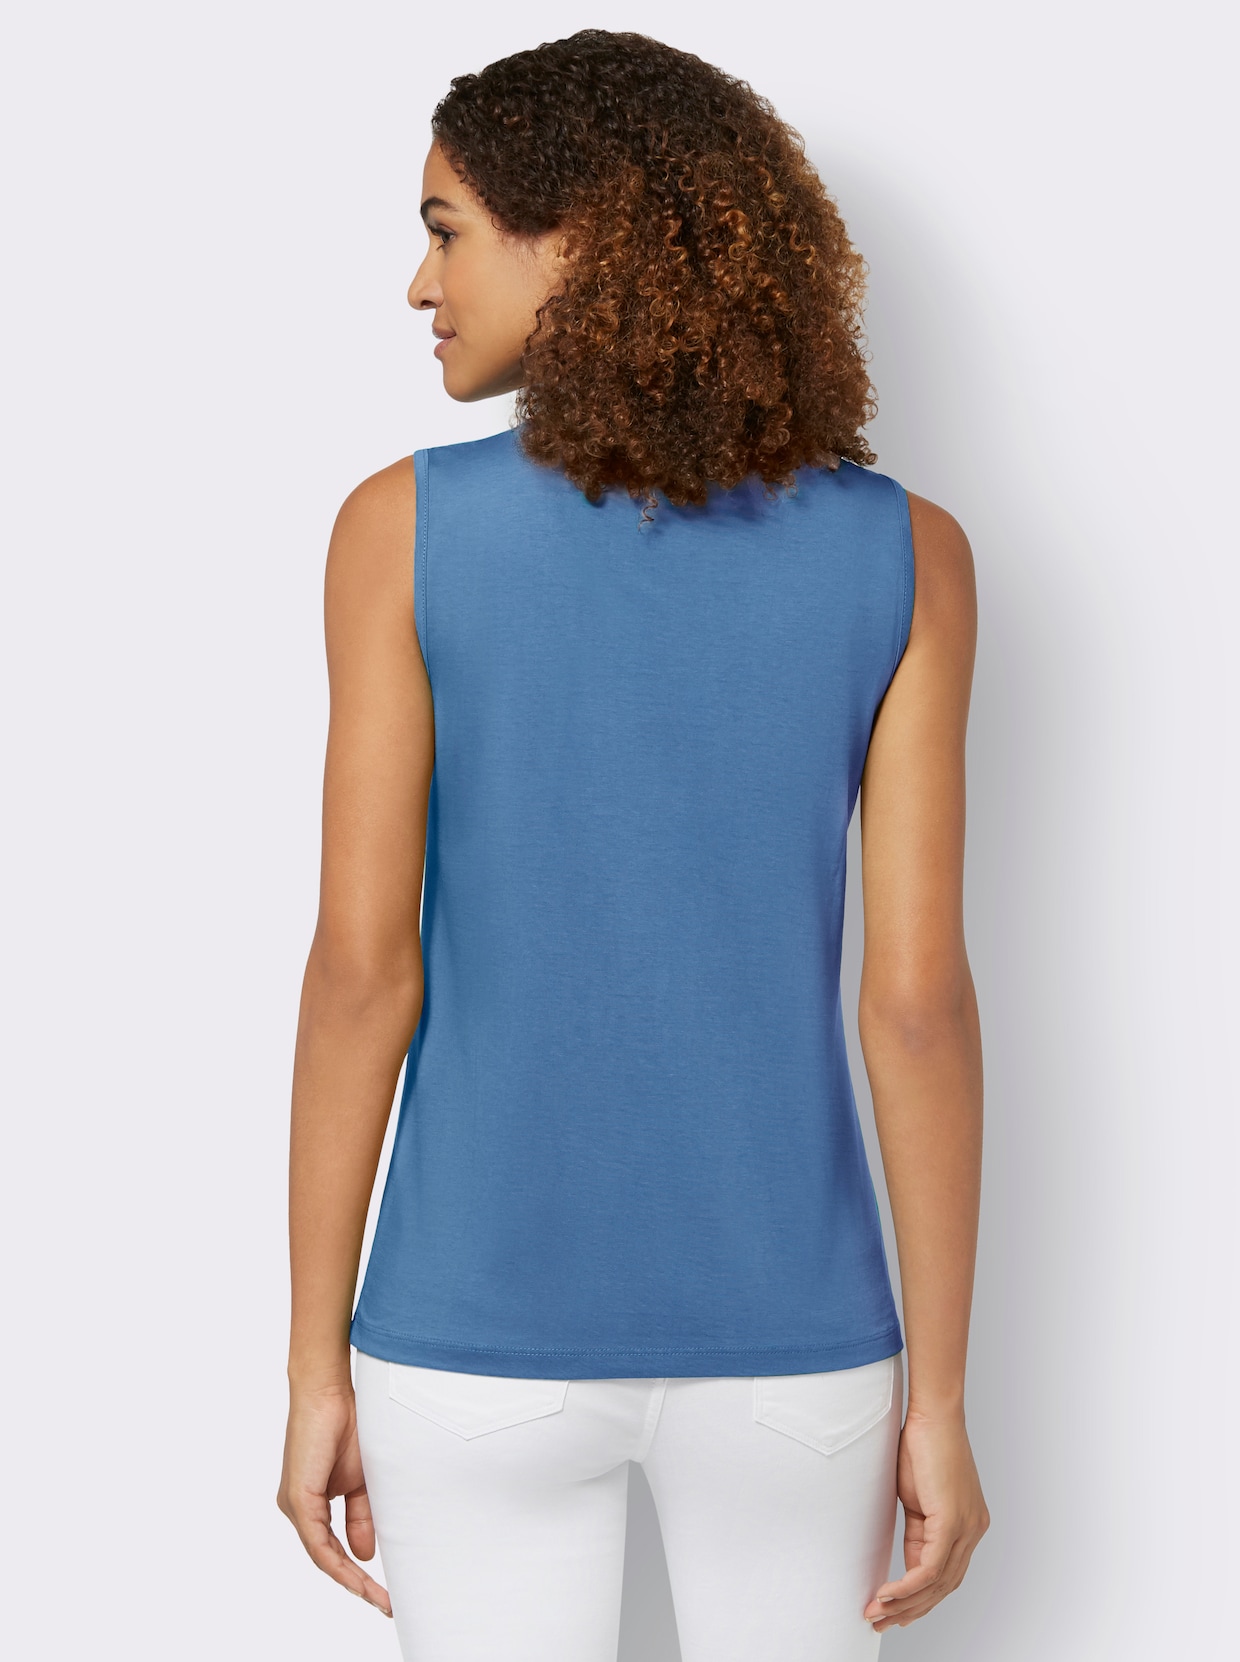 Tričkový top - jemná modrá